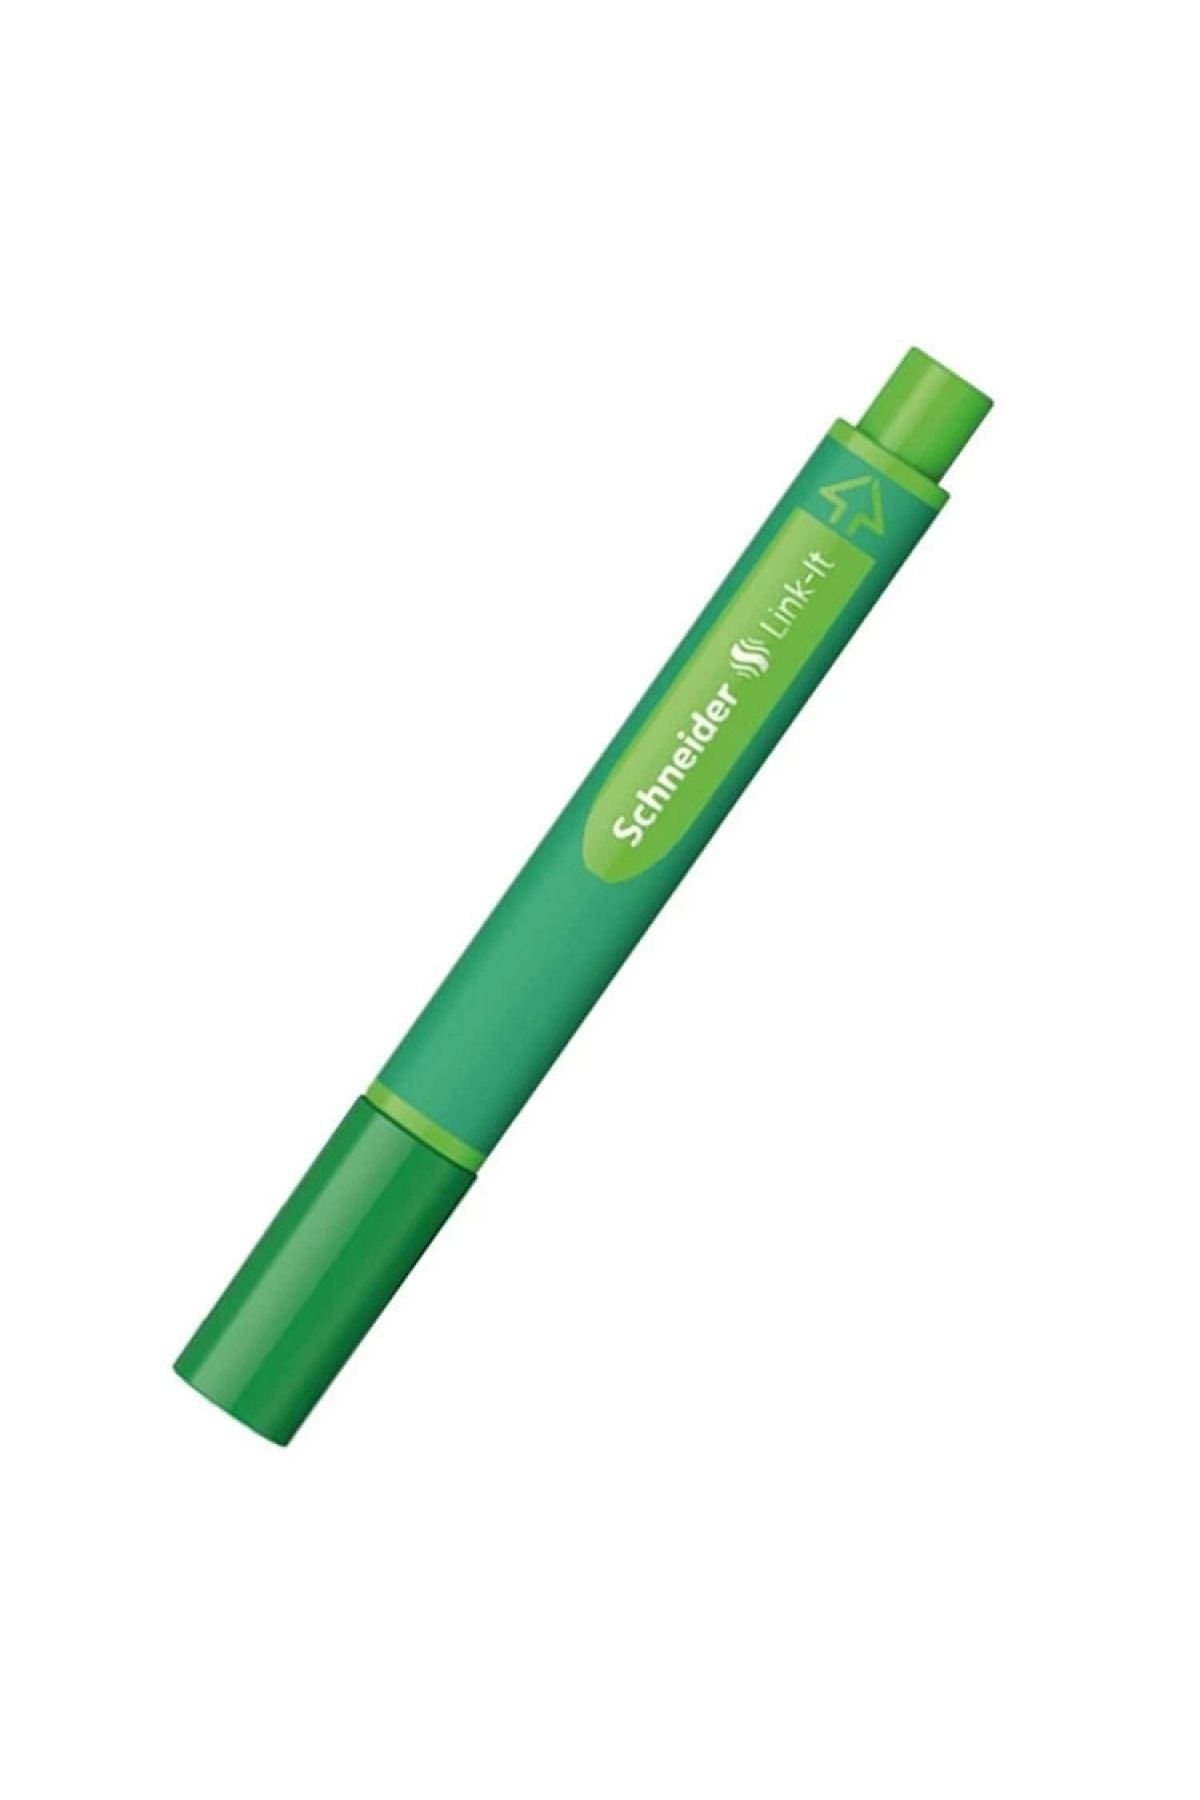 Schneider Link-ıt Keçe Uçlu Kalem 1.0 Mm Yeşil 192004